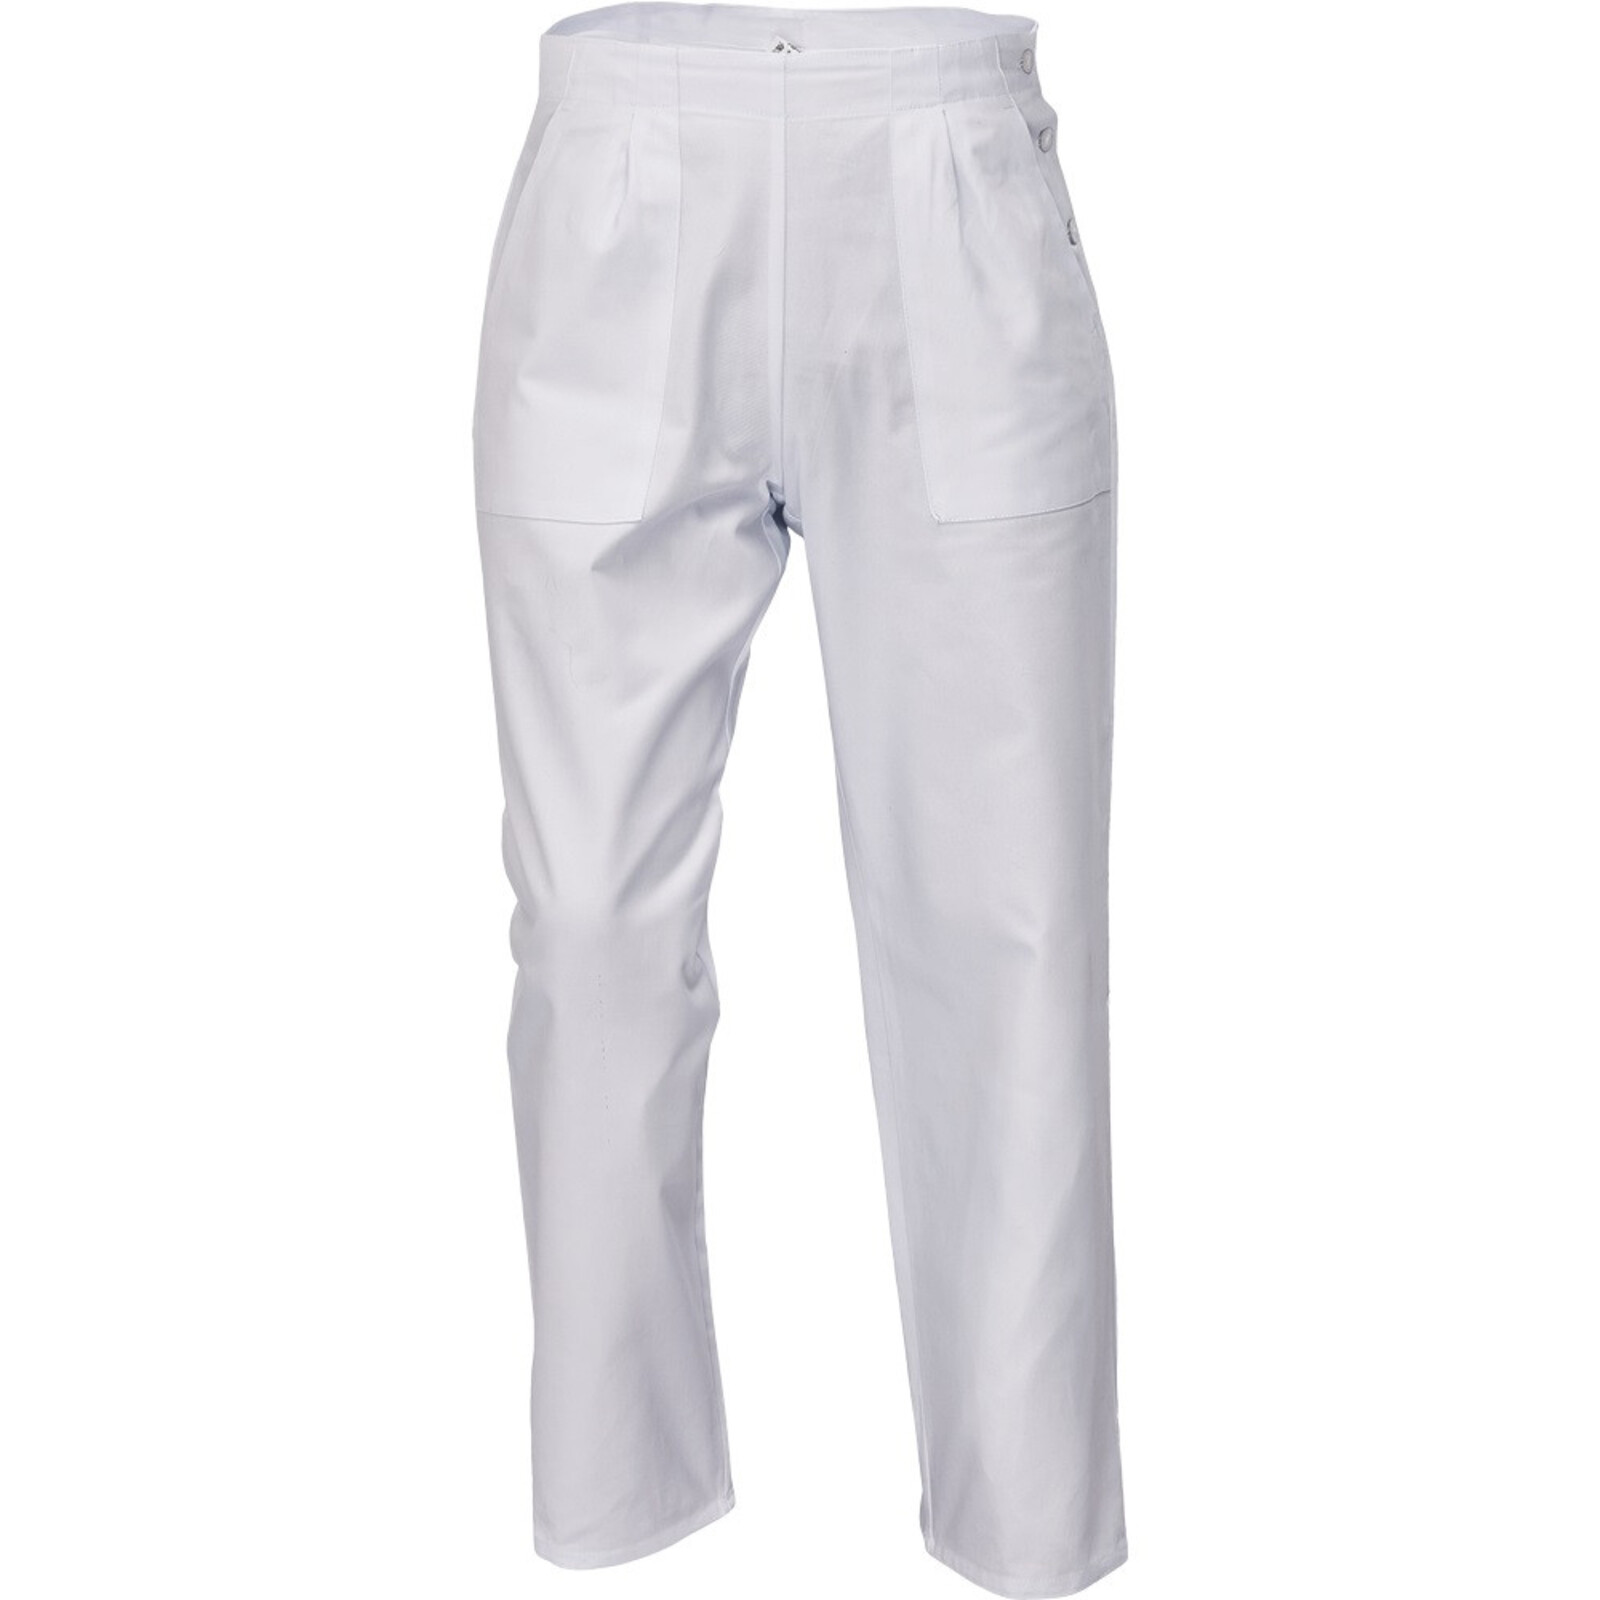 Dámske biele nohavice Apus Lady - veľkosť: 50